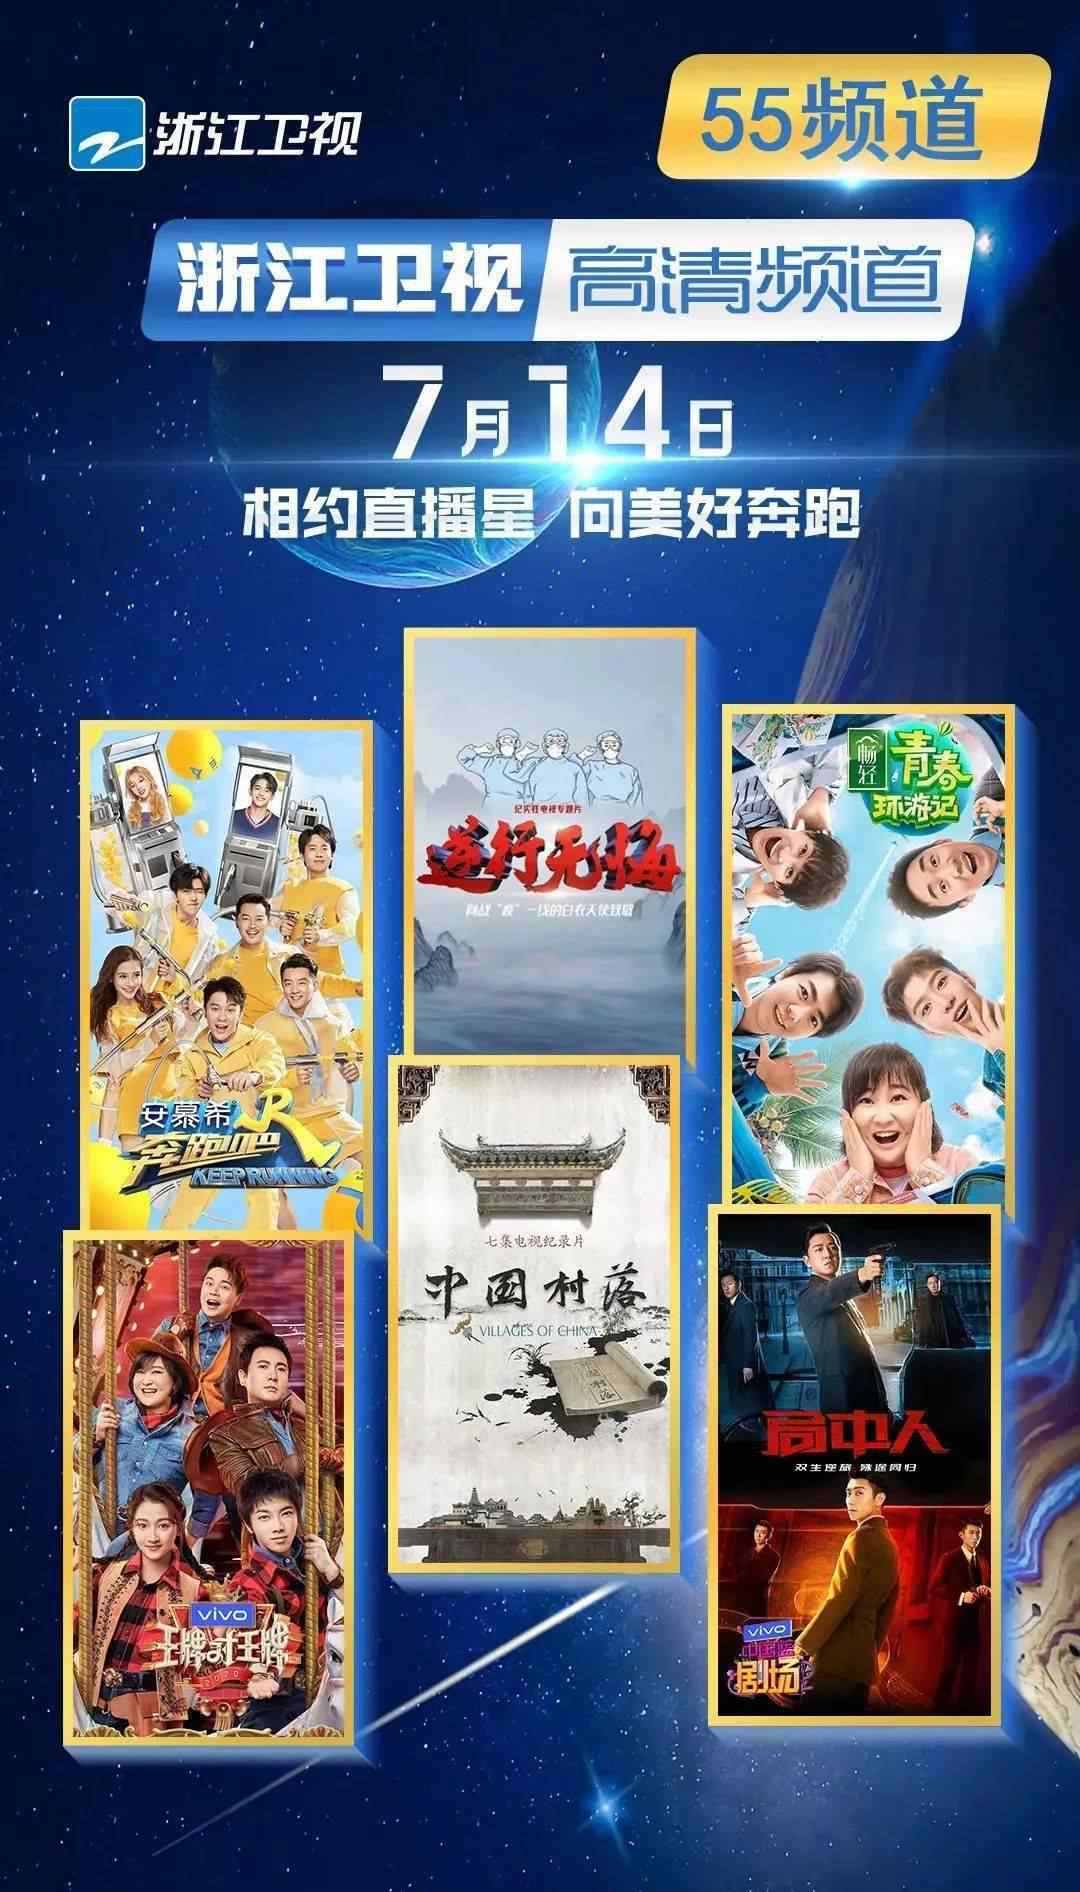 四川卫视在线直播高清 直播卫星平台7月14日增加“浙江卫视”和“四川卫视”高清频道